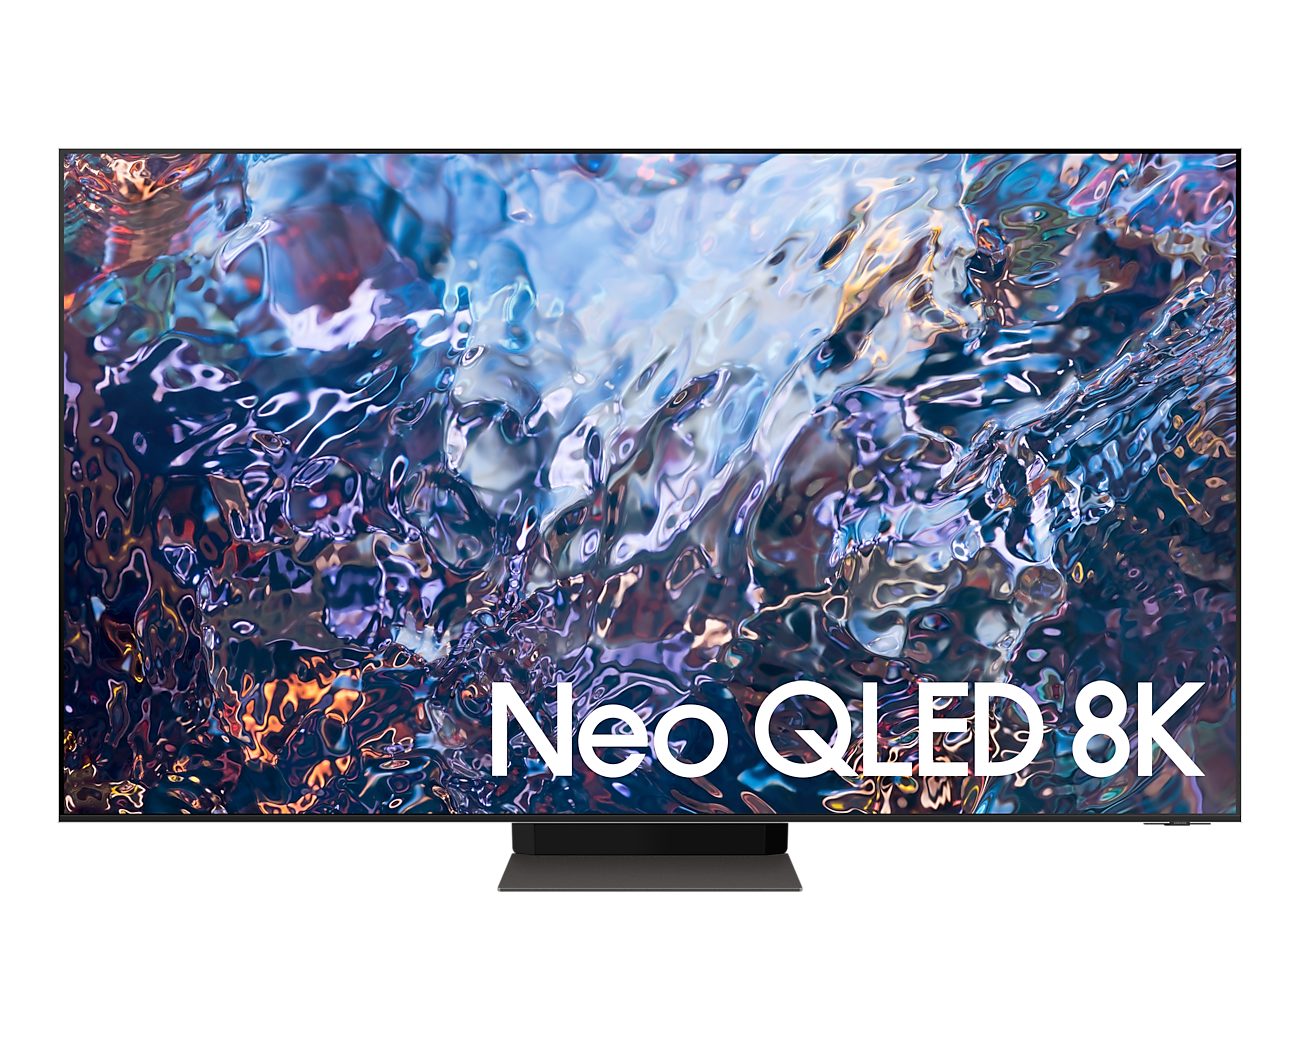 Smart Tivi Neo QLED 8K 55 inch Samsung QA55QN700A - Chính hãng